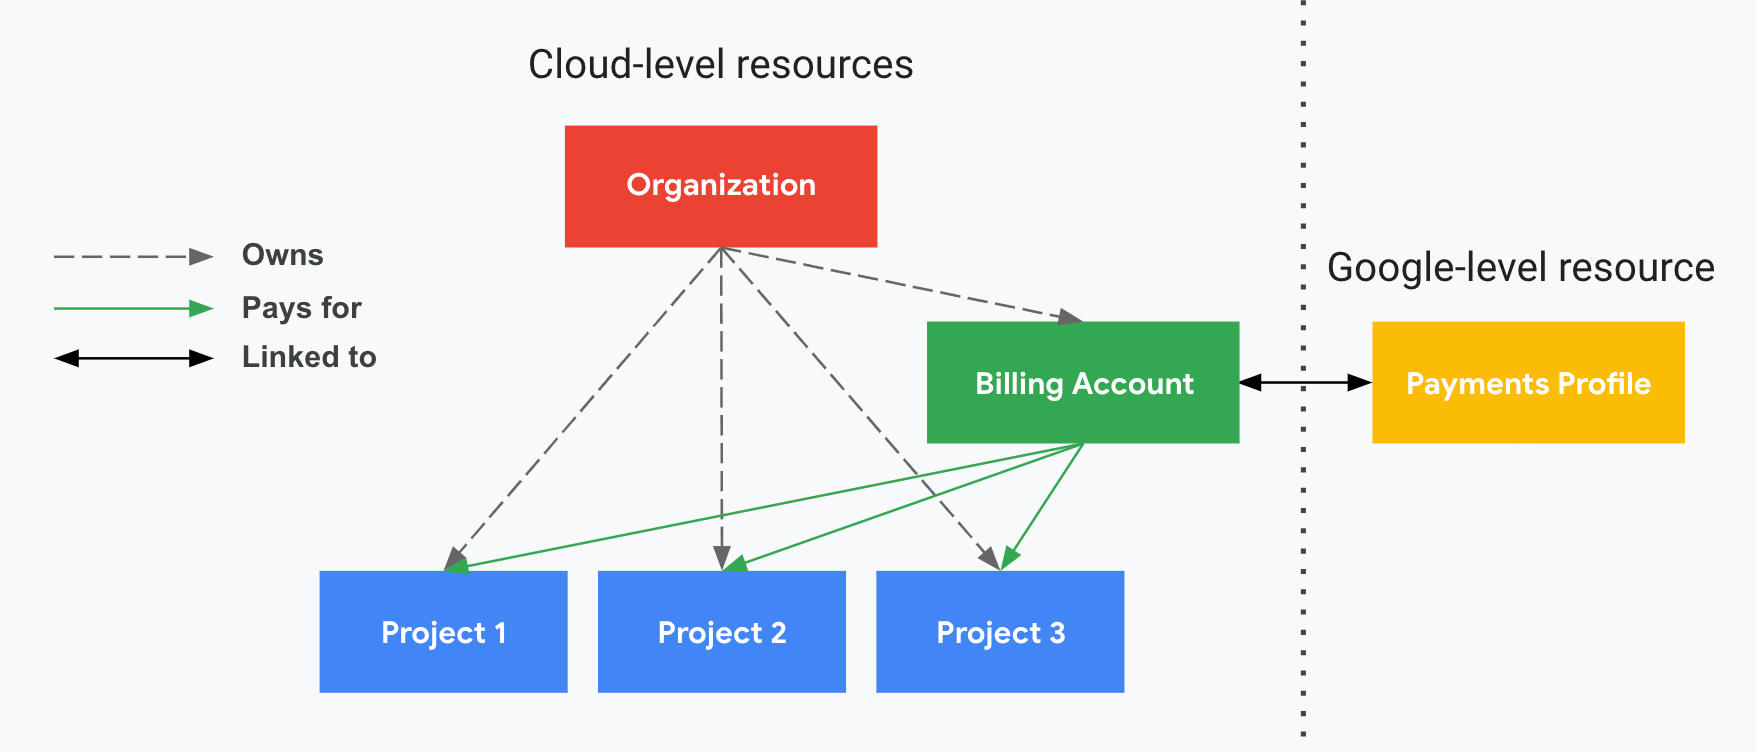 Illustre la relation entre les projets et un compte de facturation cloud, ainsi qu&#39;un profil de paiement Google. Un côté affiche vos ressources au niveau du cloud (compte de facturation Cloud et projets associés) et l&#39;autre, divisé du premier par une ligne pointillée verticale, affiche votre ressource au niveau de Google (profil de paiement).
      Les paiements de vos projets sont assurés par votre compte de facturation Cloud, qui est associé à un profil de paiement Google.